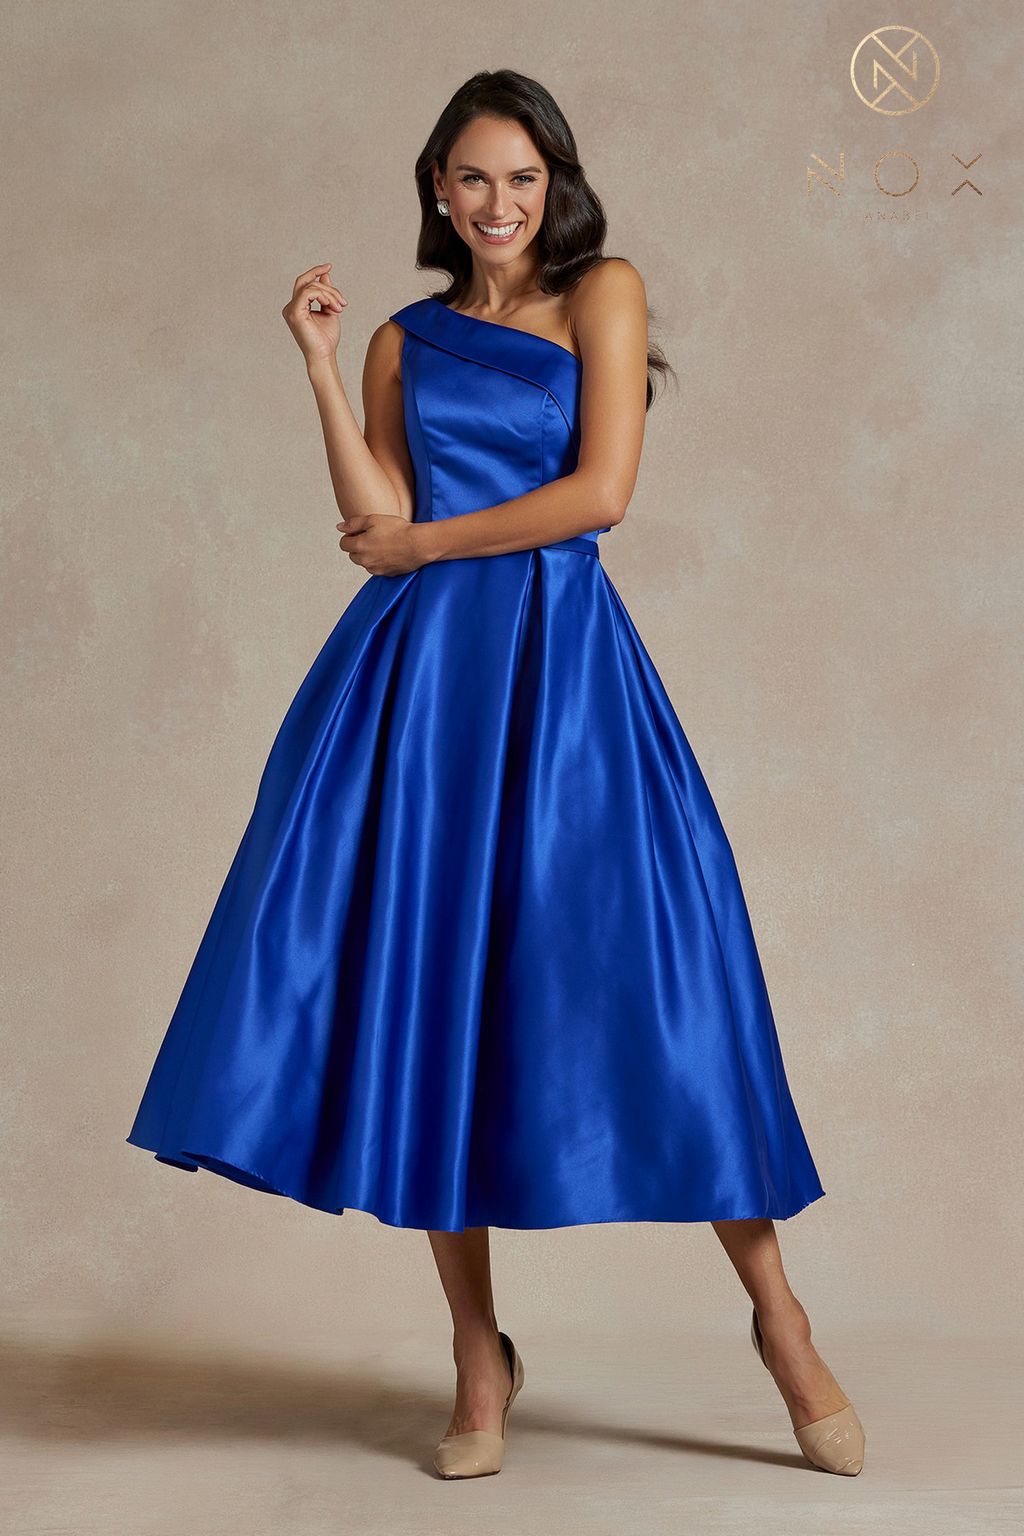 Homecoming Dresses Long One Shoulder Formal Dress Royal Blue